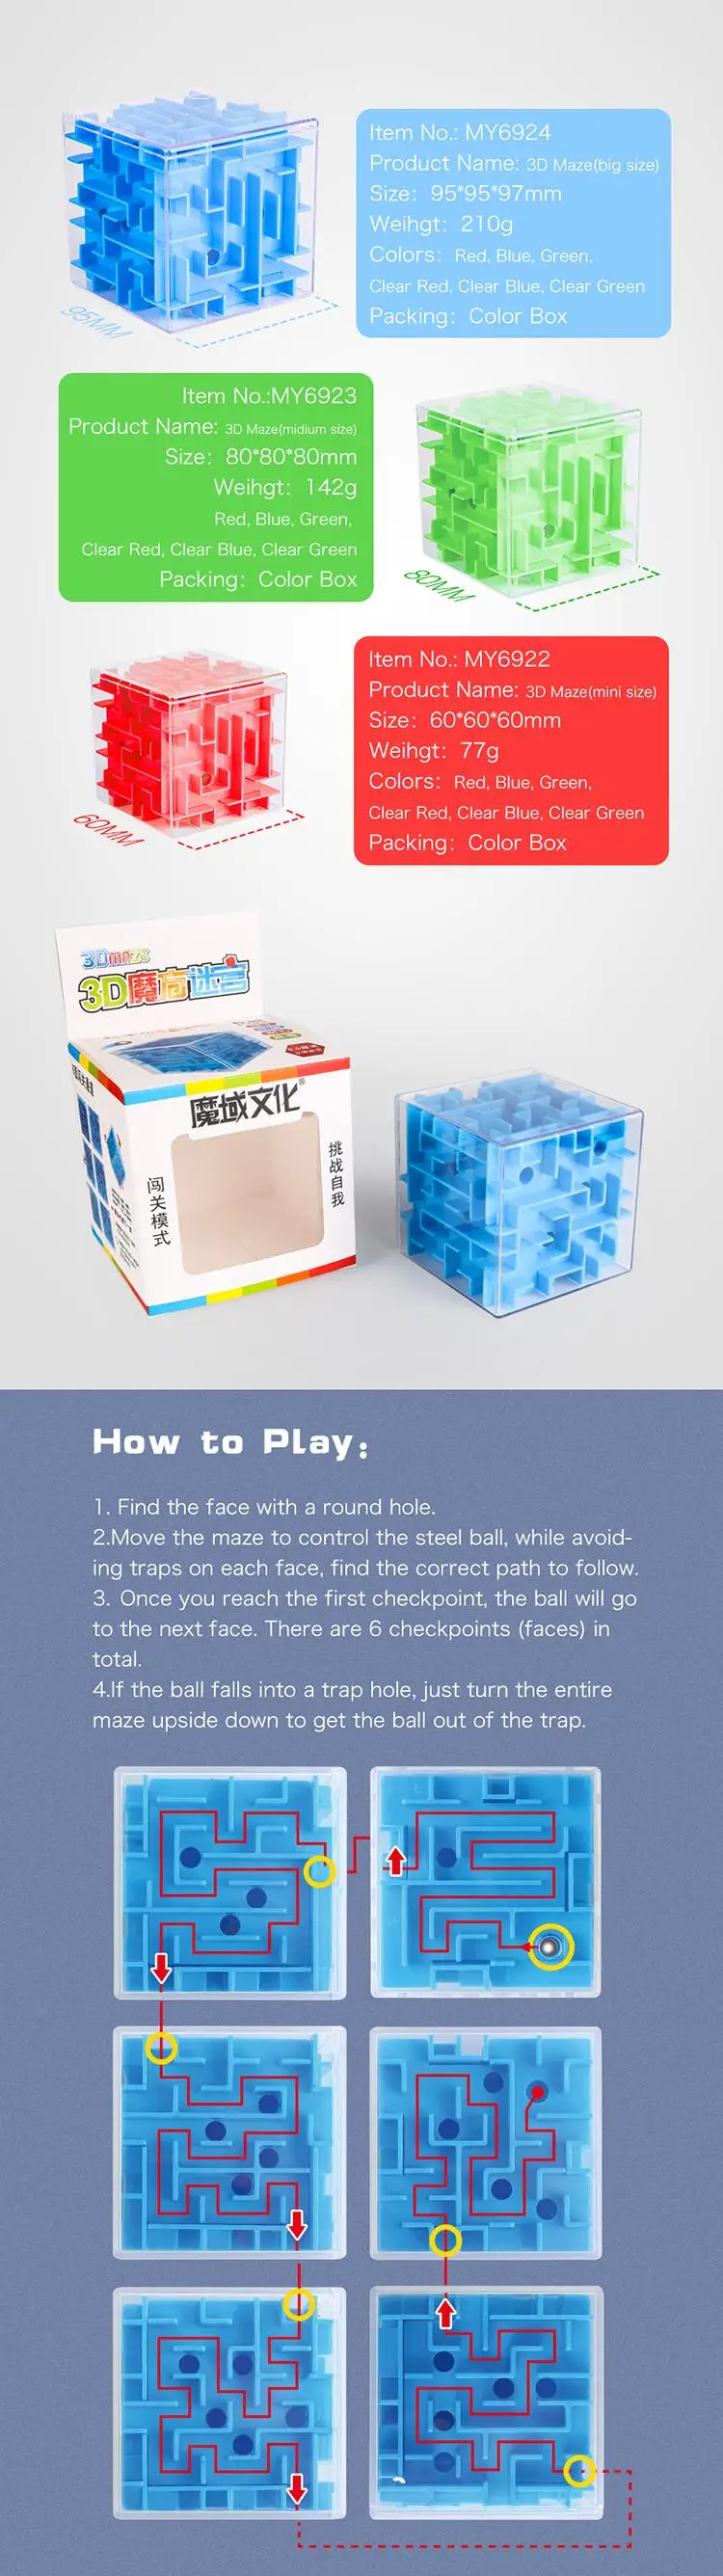 3D куб головоломка Лабиринт стальной шар игра игрушки чехол забавная игра для мозгов интеллектуальное улучшение баланса способность Развивающие игрушки для детей